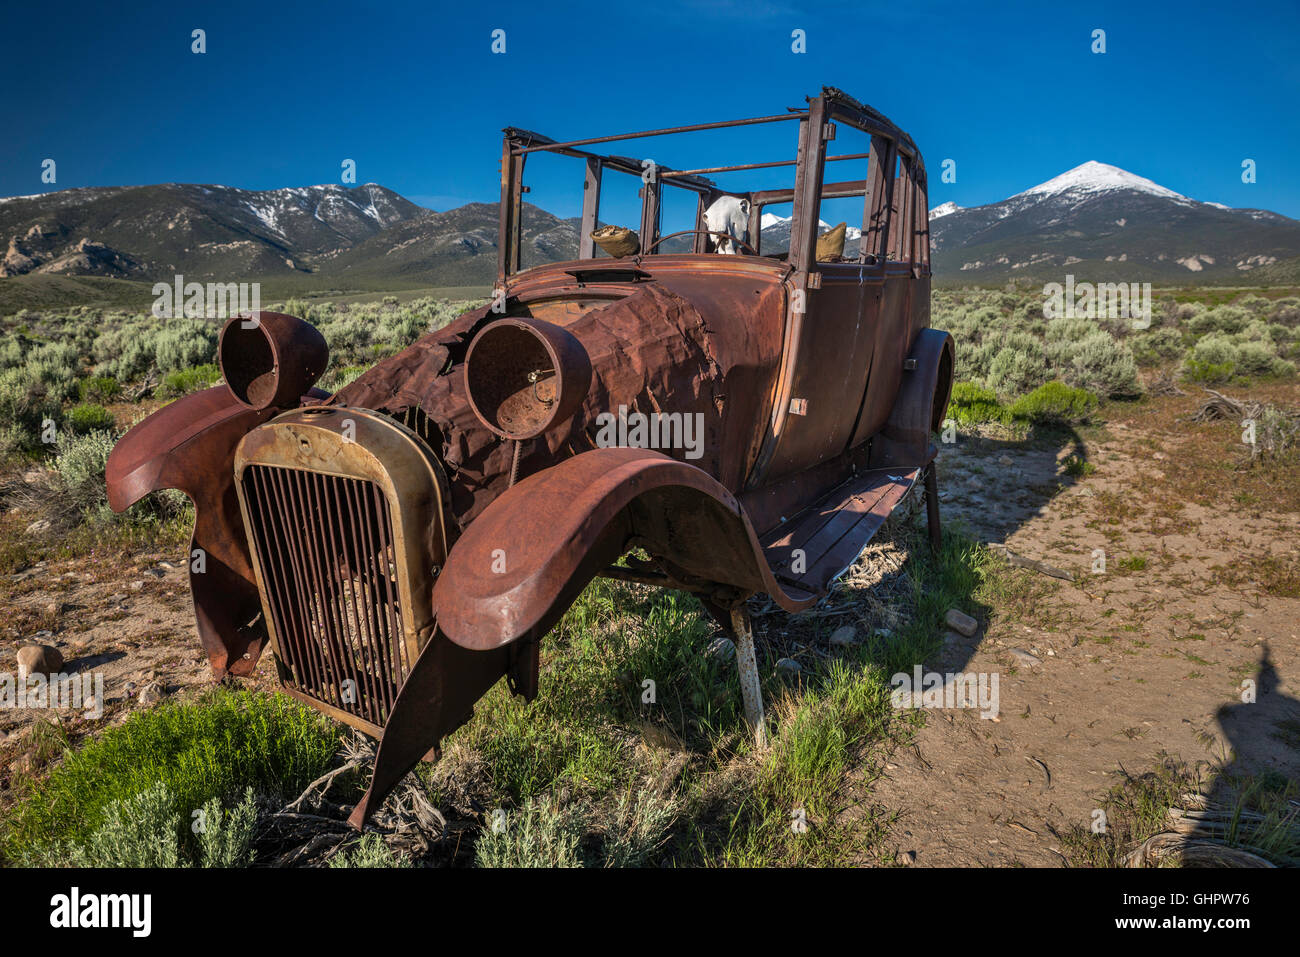 Abbandonato rovello di automobile arrugginito, cranio di mucca all'interno, nella valle di Snake, vicino al parco nazionale di Great Basin e alla città di Baker, Nevada, Stati Uniti Foto Stock